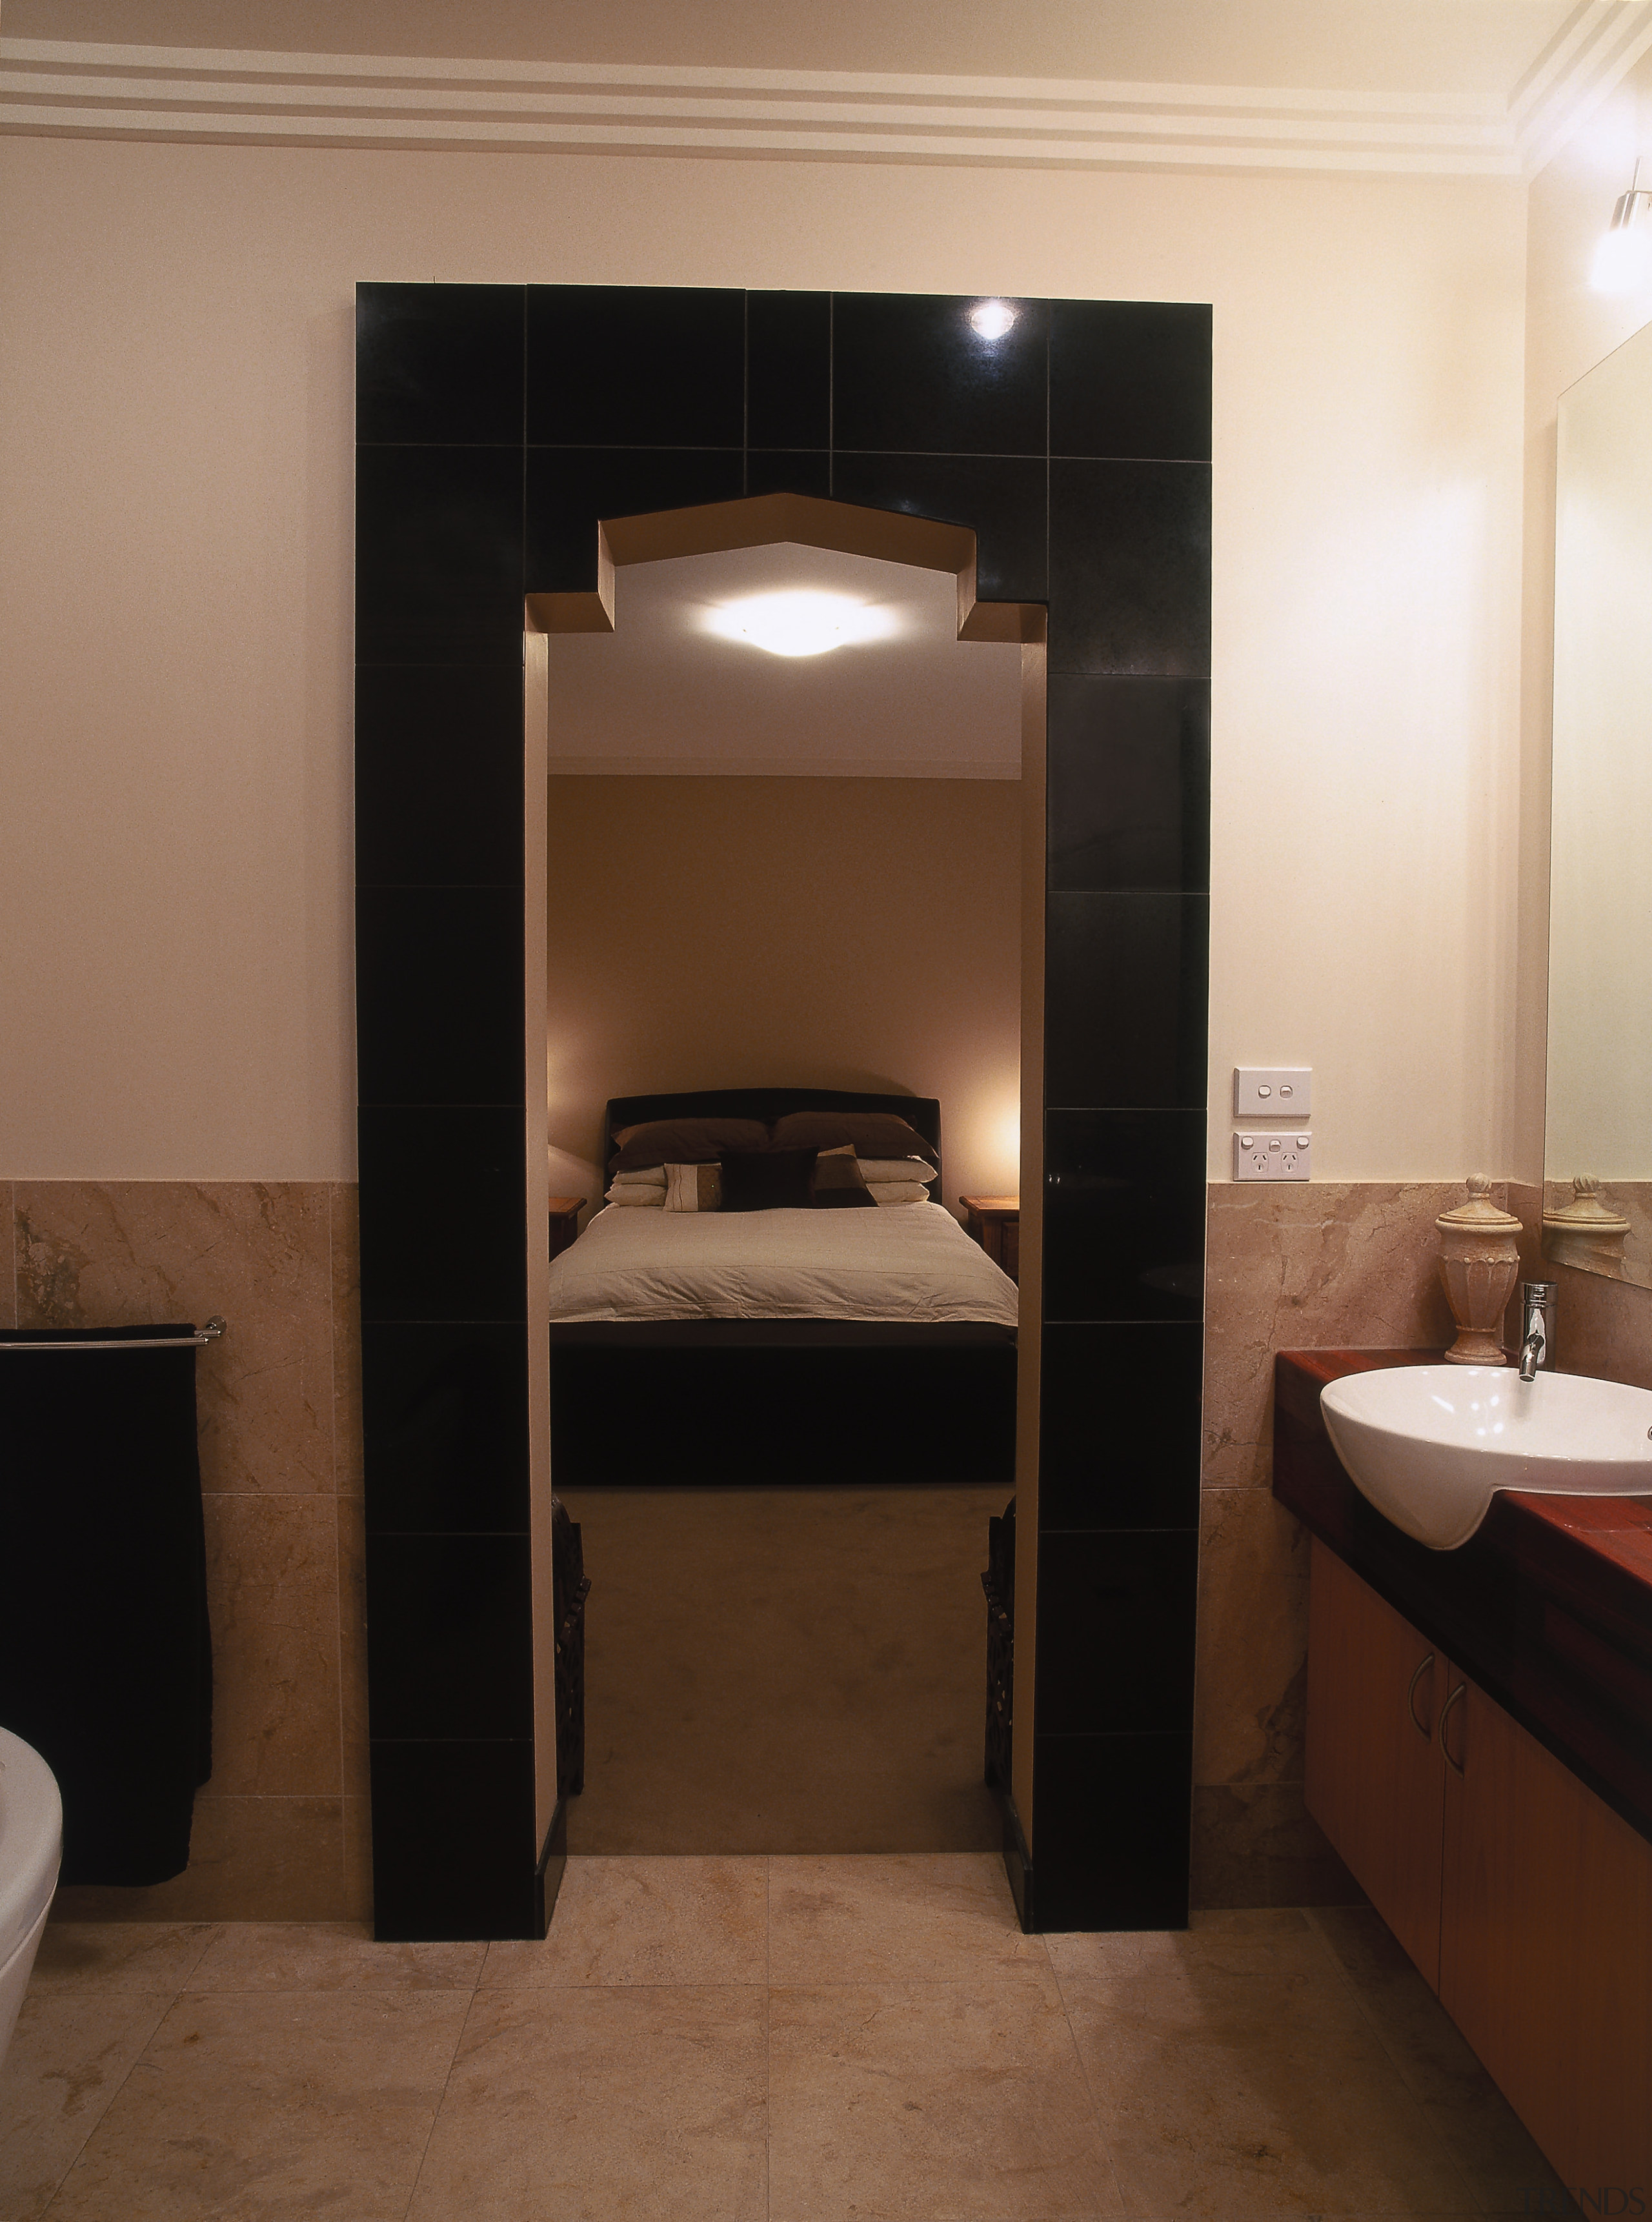 view of the bathroom leading into themaster bedroom bathroom, floor, flooring, interior design, plumbing fixture, room, sink, brown